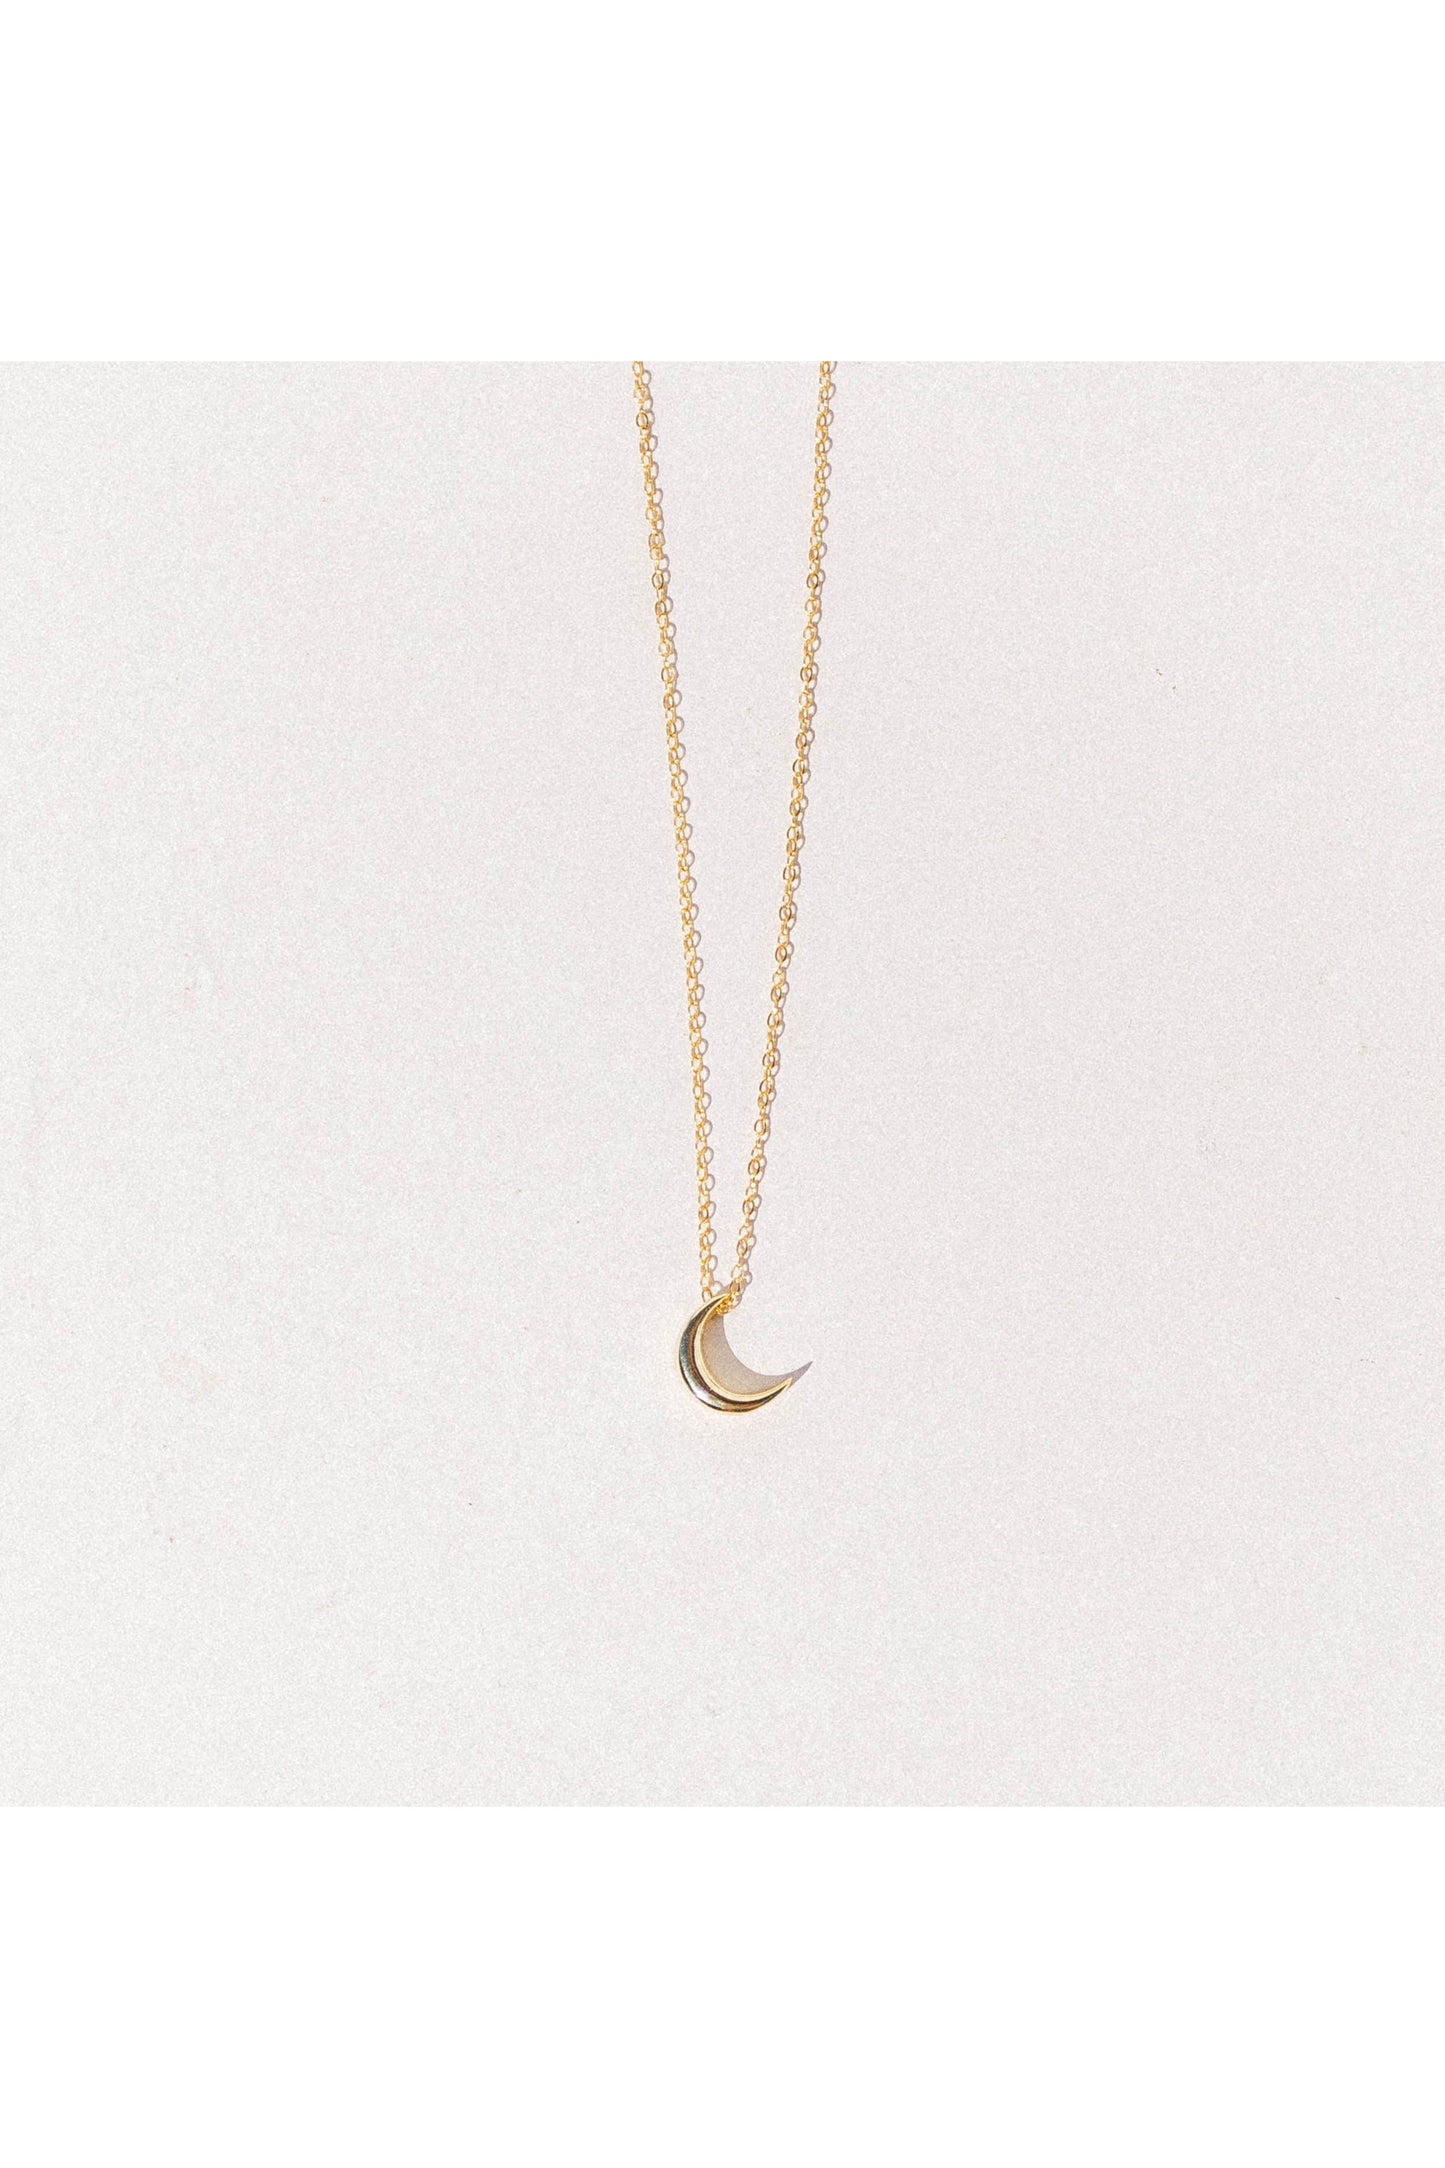 Lunar rise pendant necklace